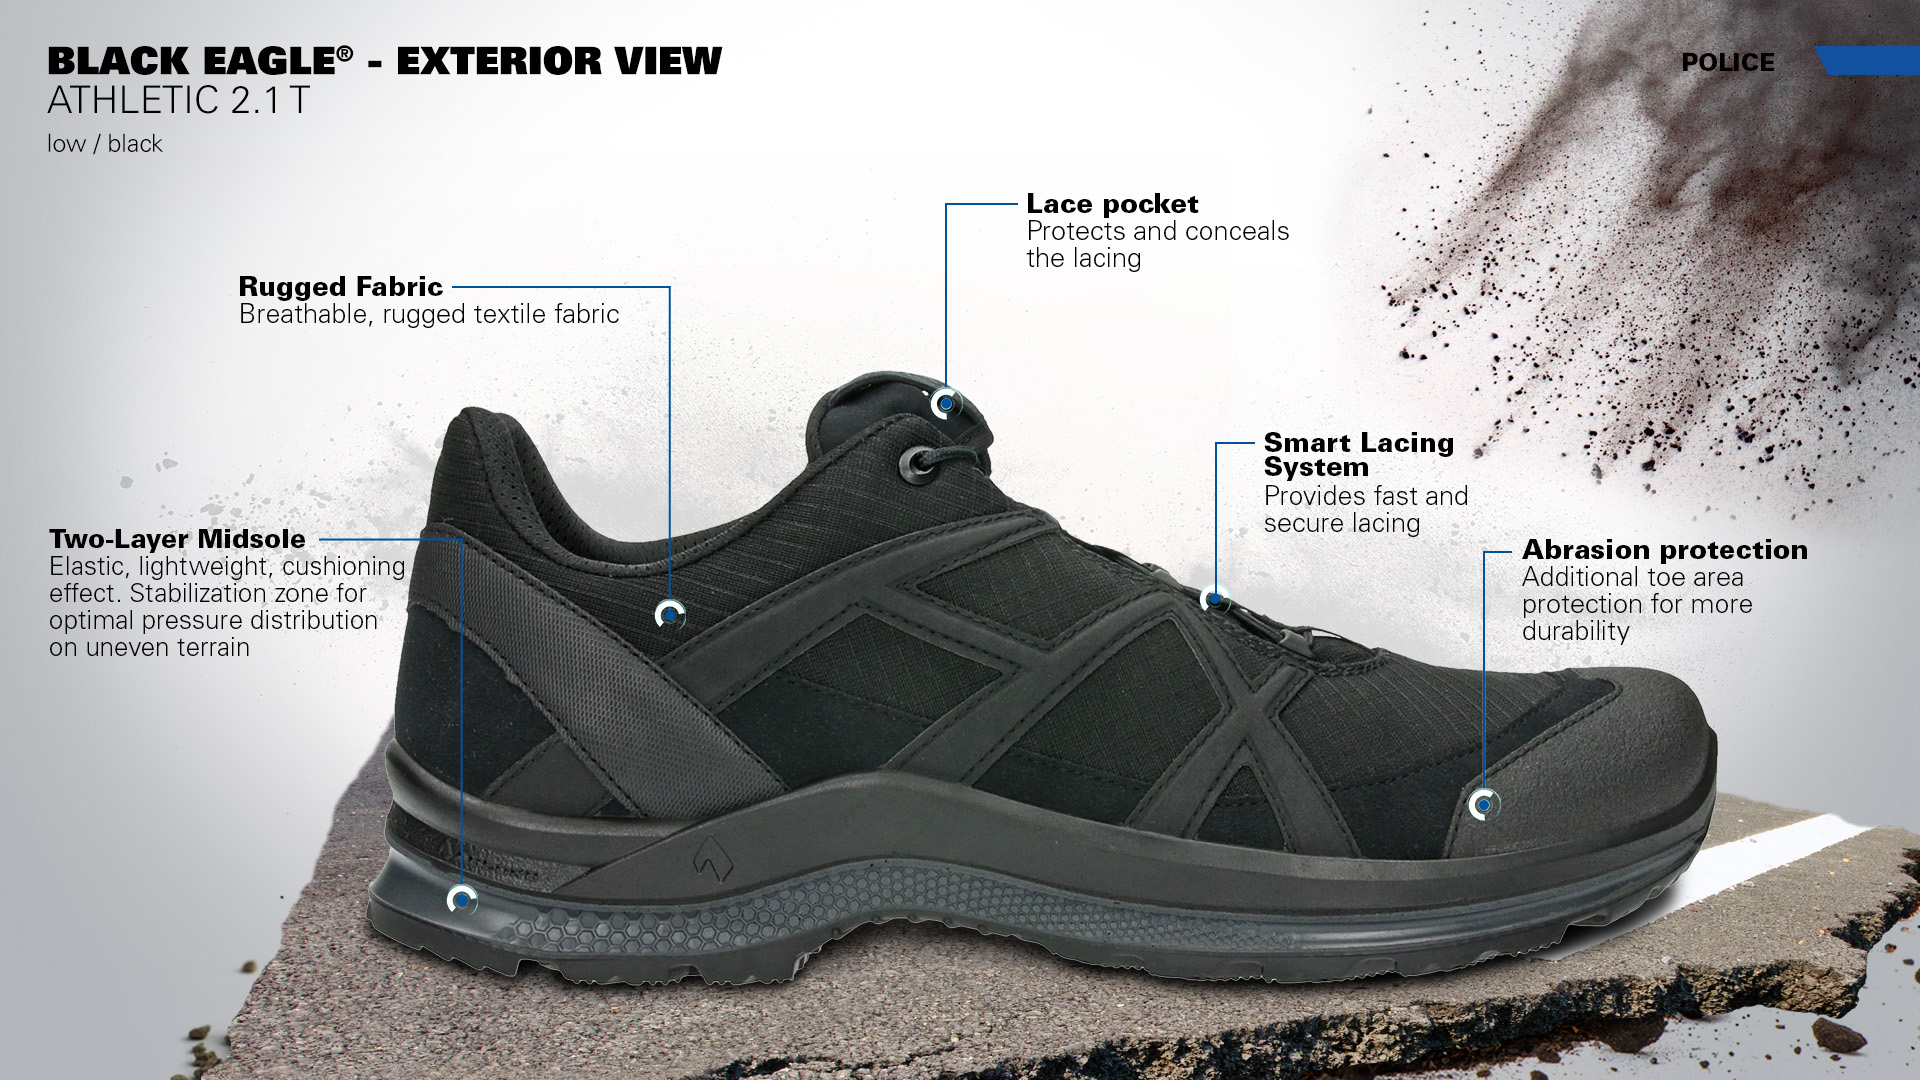 Haix Black Eagle Athletic 2.1 GTX Low/Black Nouveau Design optimisé Chaussure Fonctionnelle pour Tous Les terrains 